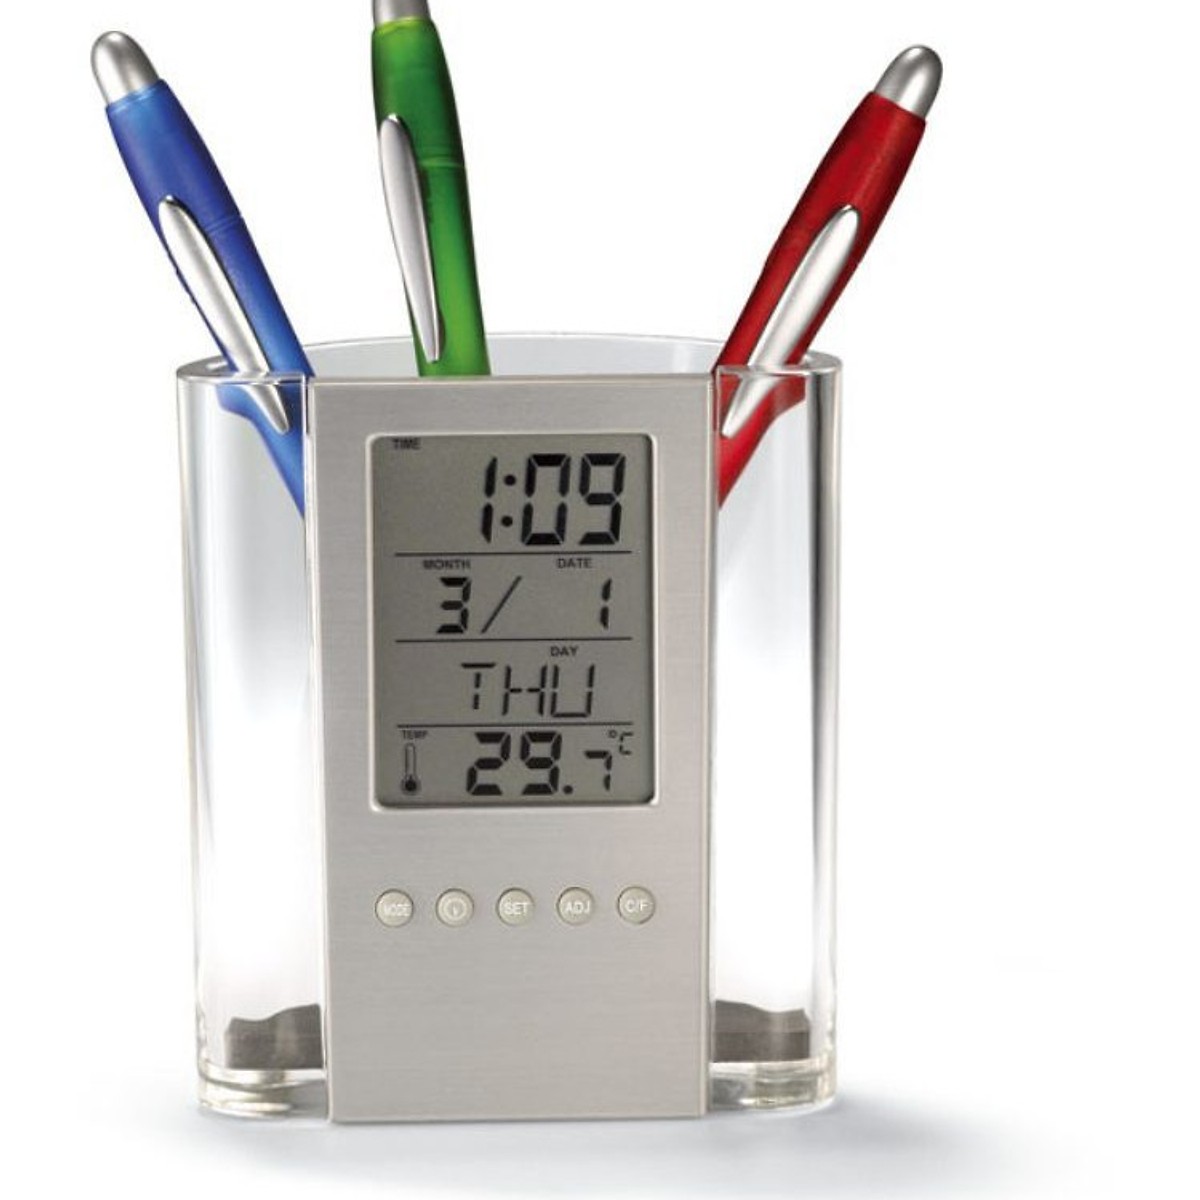 Dụng cụ cắm bút 2in1 kiêm đồng hồ hiển thị thời gian, nhiệt độ đa năng ( Tặng kèm 03 nút kẹp cao su đa năng giữ dây điện cố định ngẫu nhiên )